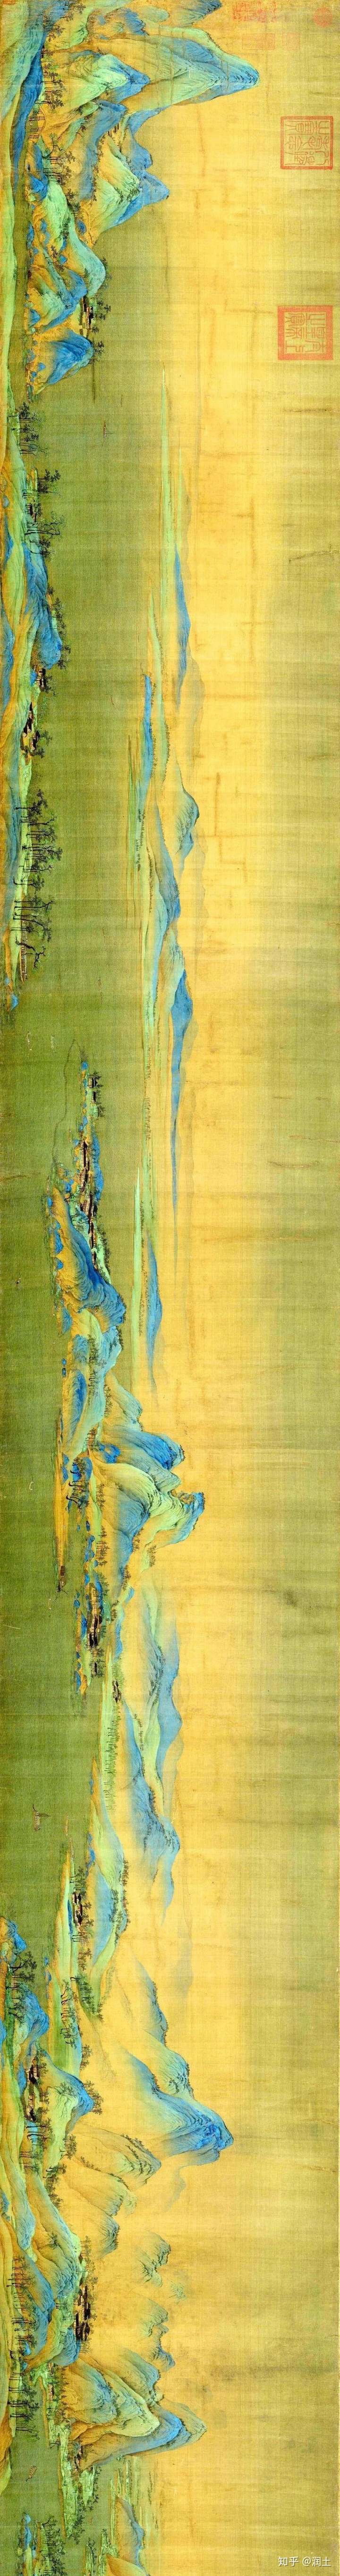 最爱国画丨王希孟《千里江山图》